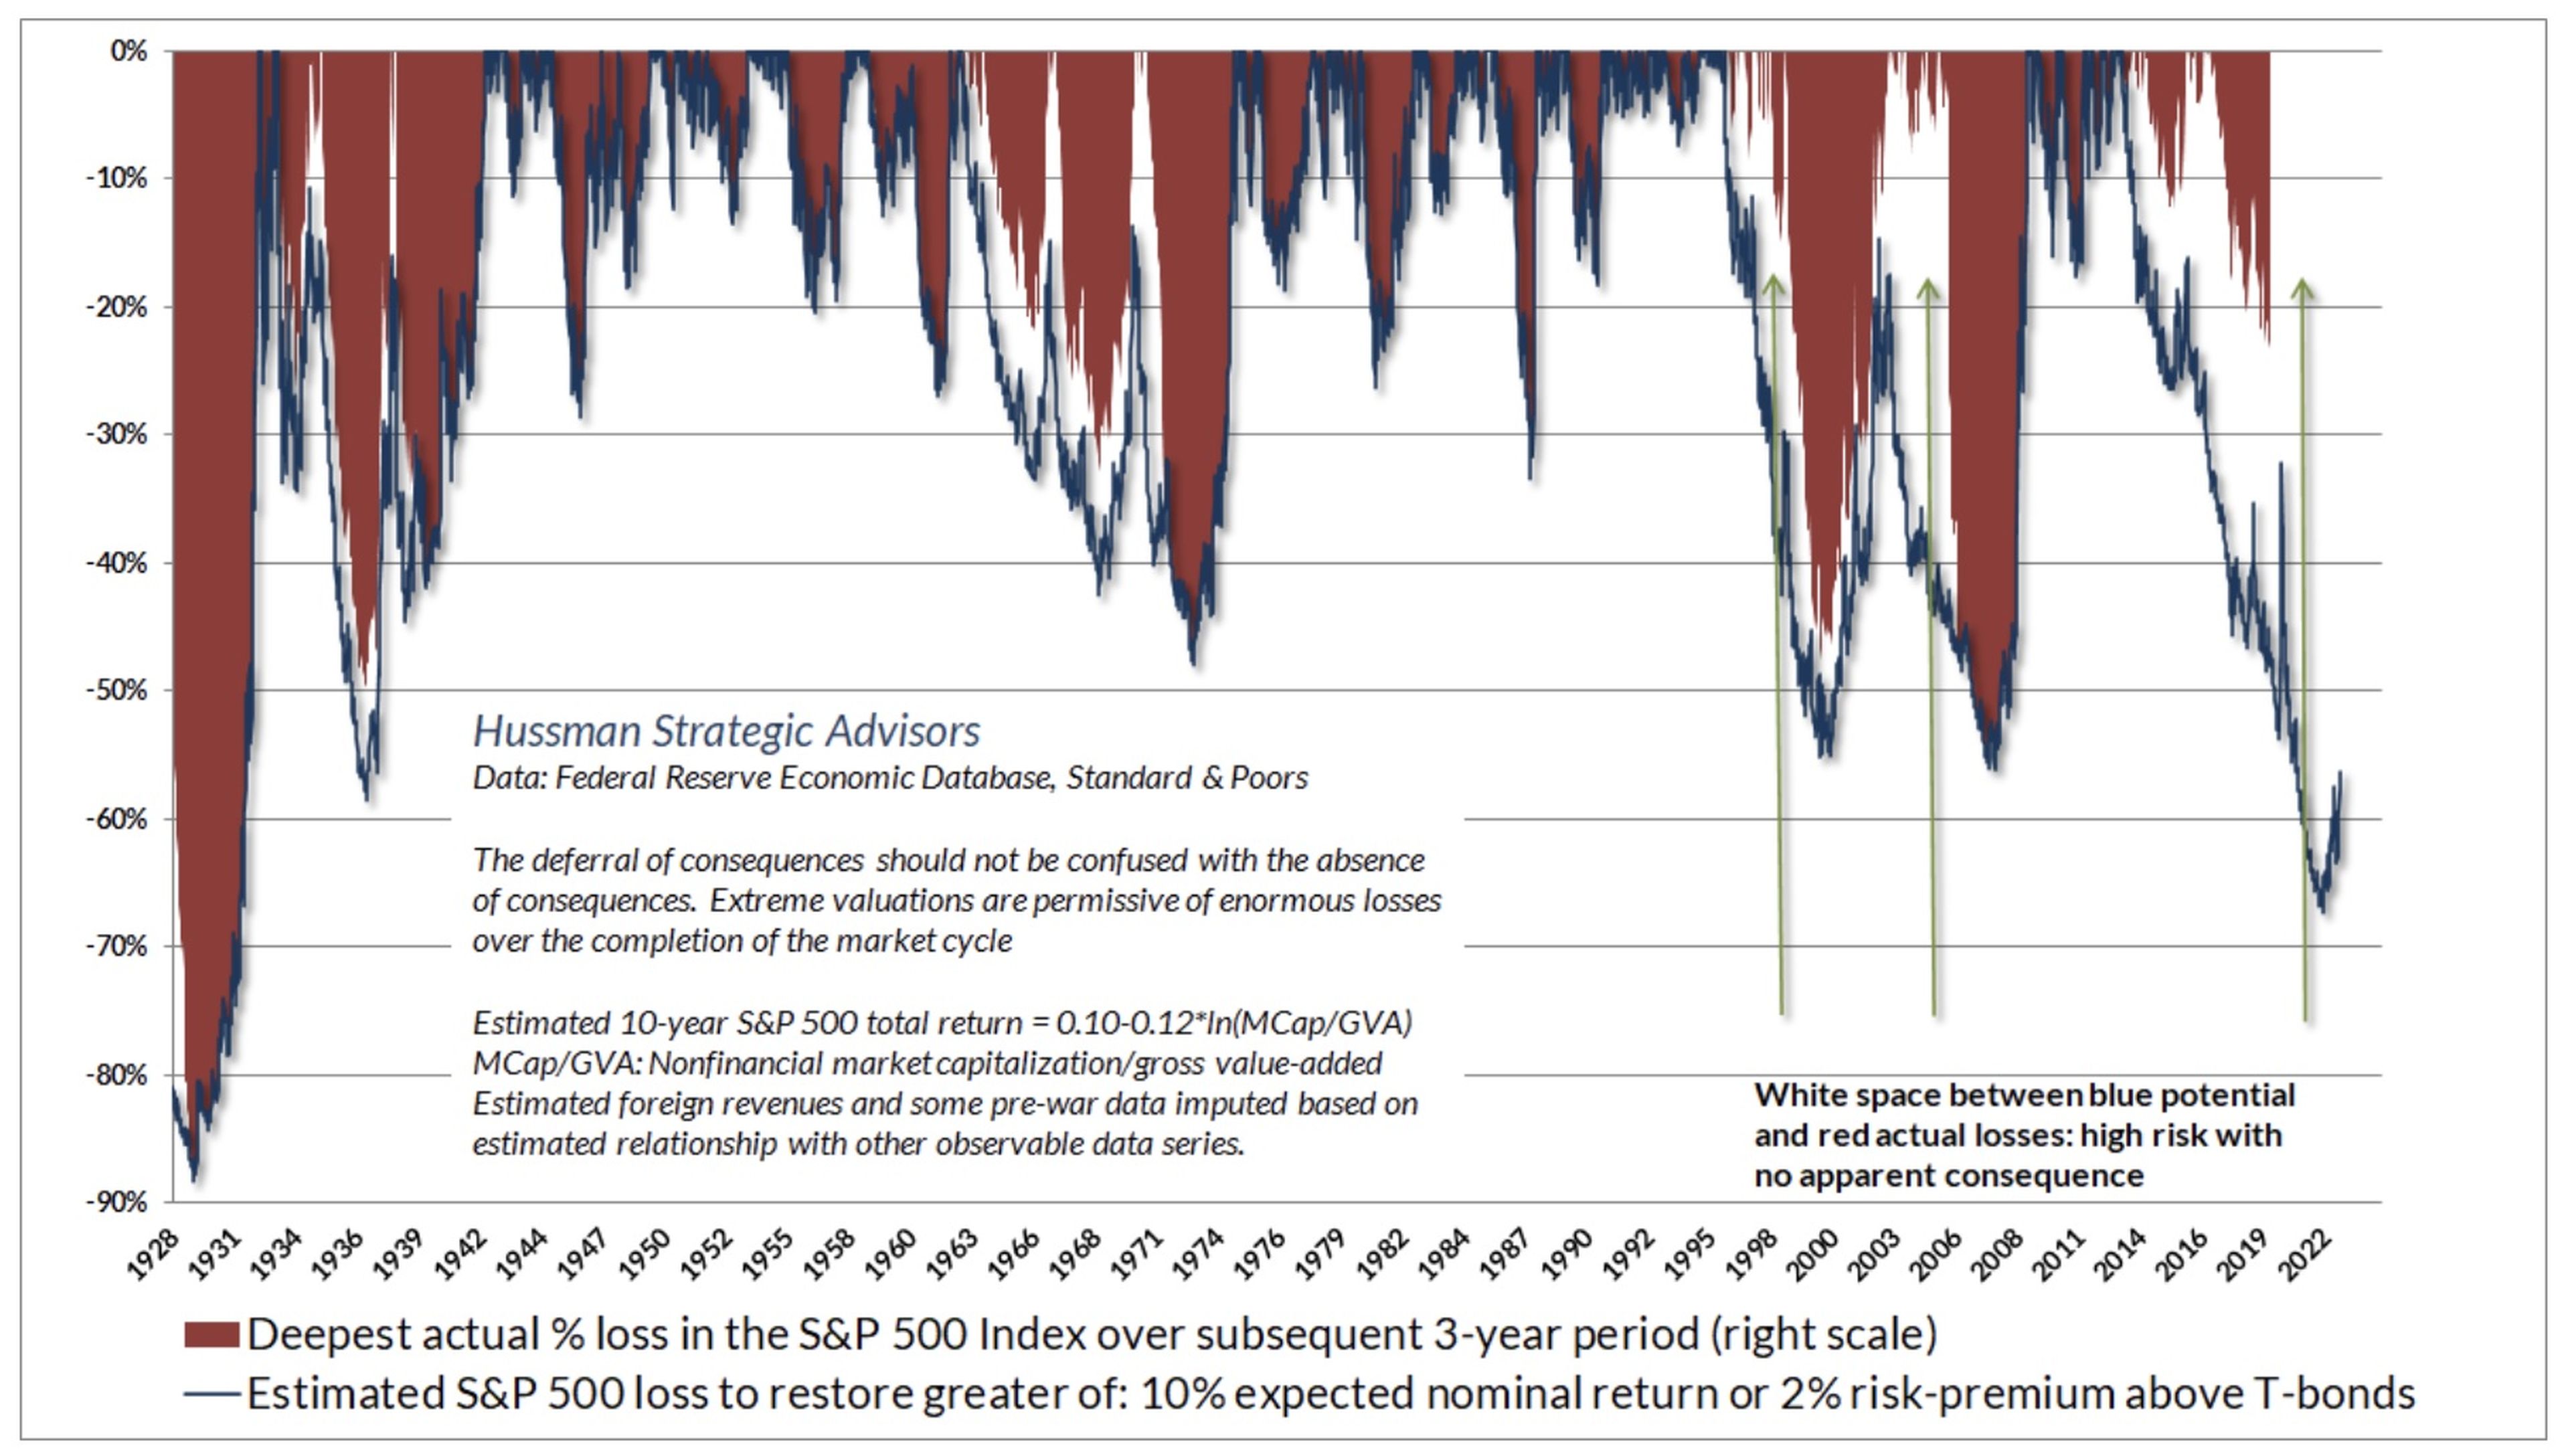 En rojo, la mayor corrección, en %, en el S&P 500 en un periodo de 3 años consecutivos. En azul, la pérdida estimada del S&P 500 para restablecer el nivel del 10% de retorno nominal o el 2% sobre los bonos del Tesoro.